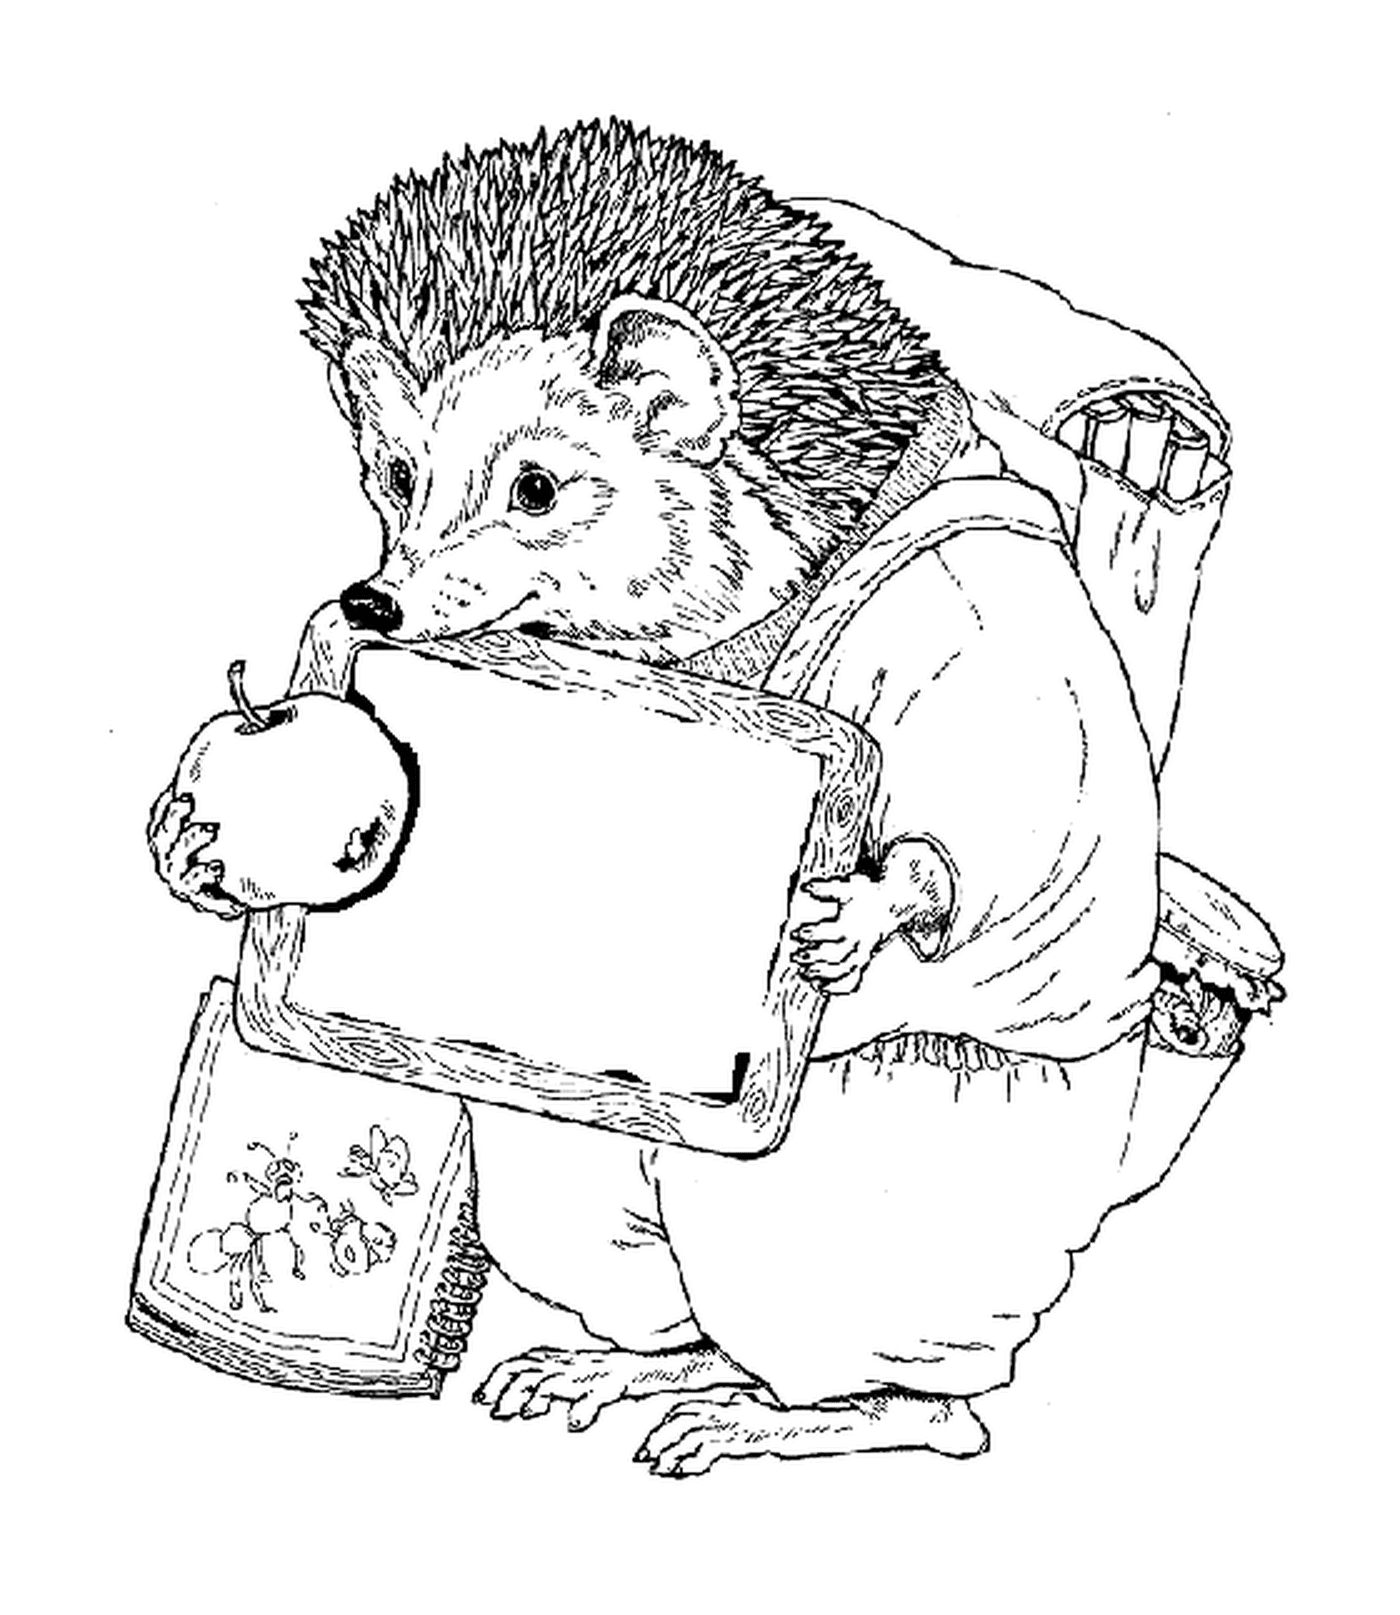  Hedgehog con su bolsa de la escuela 